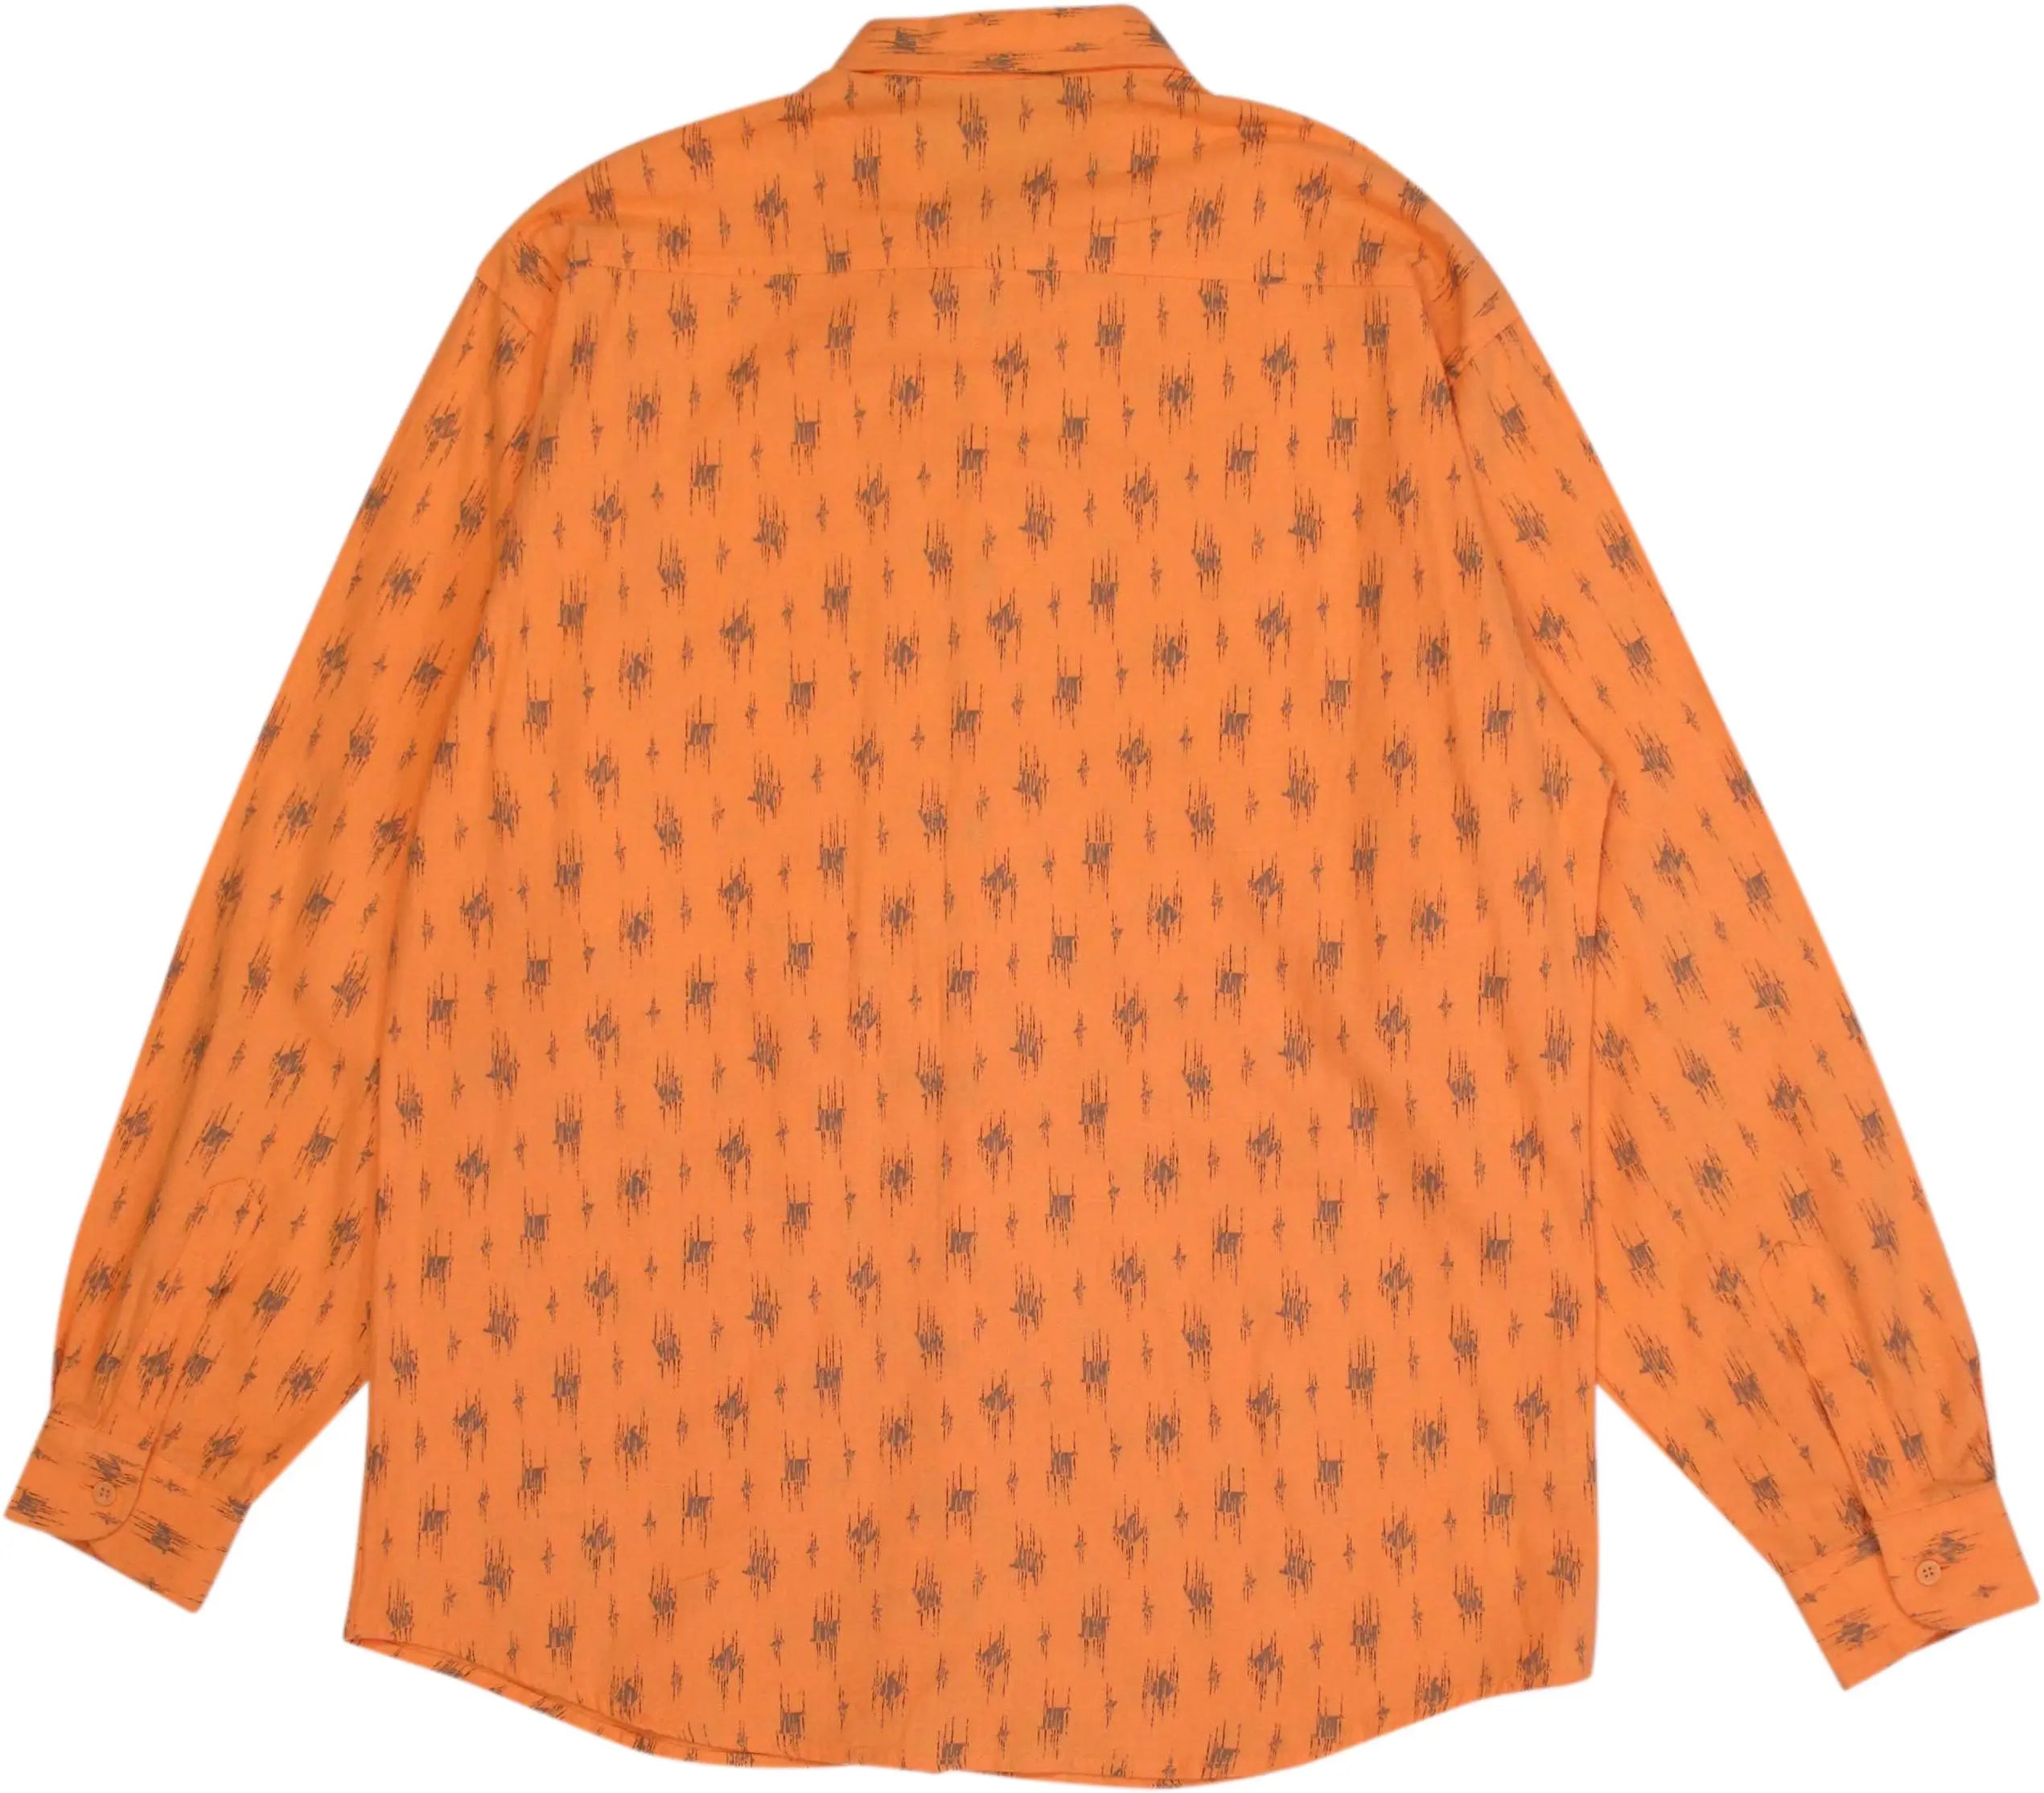 Stefanel - 70s Orange Shirt by Stefanel- ThriftTale.com - Vintage and second handclothing